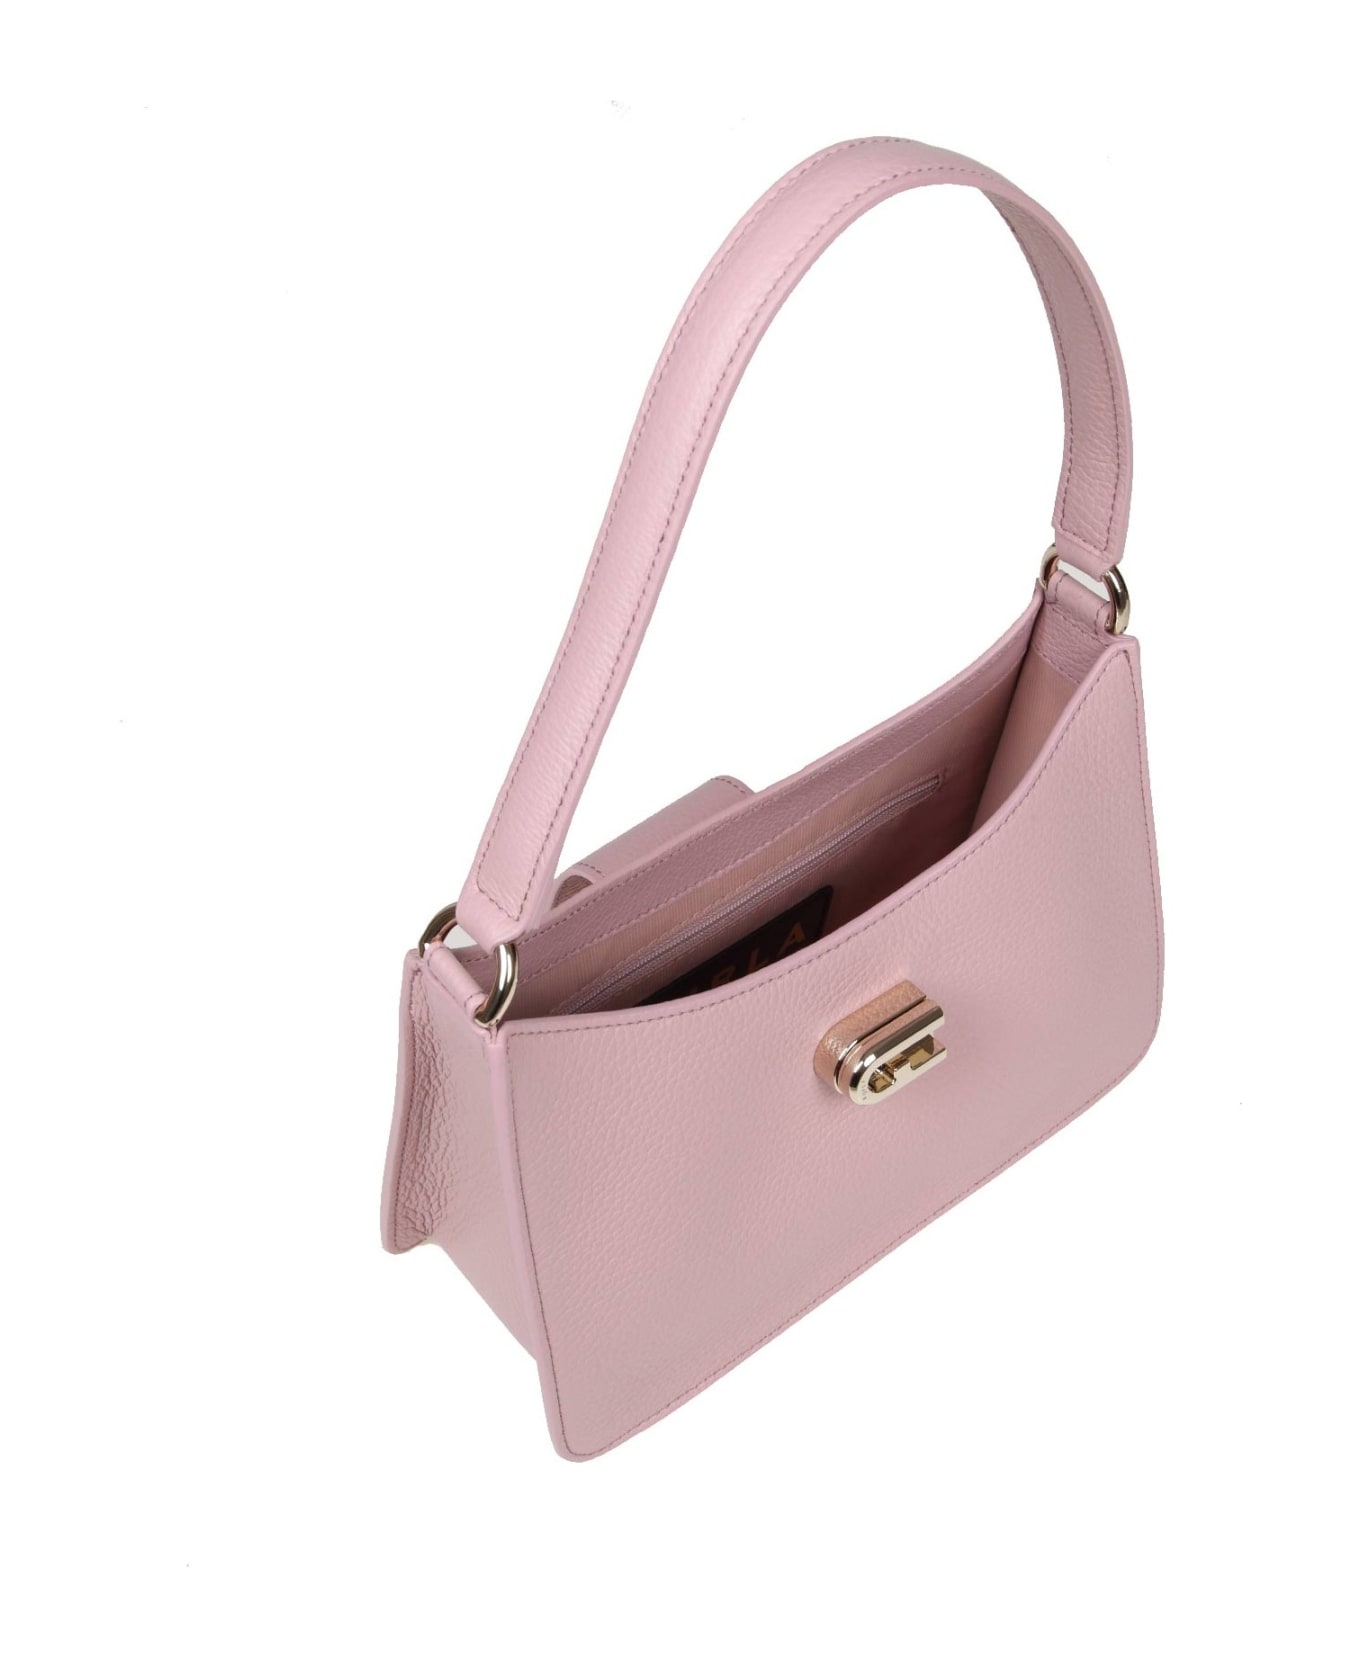 Furla 1927 S Shoulder Bag In Pink Soft Leather - Pink